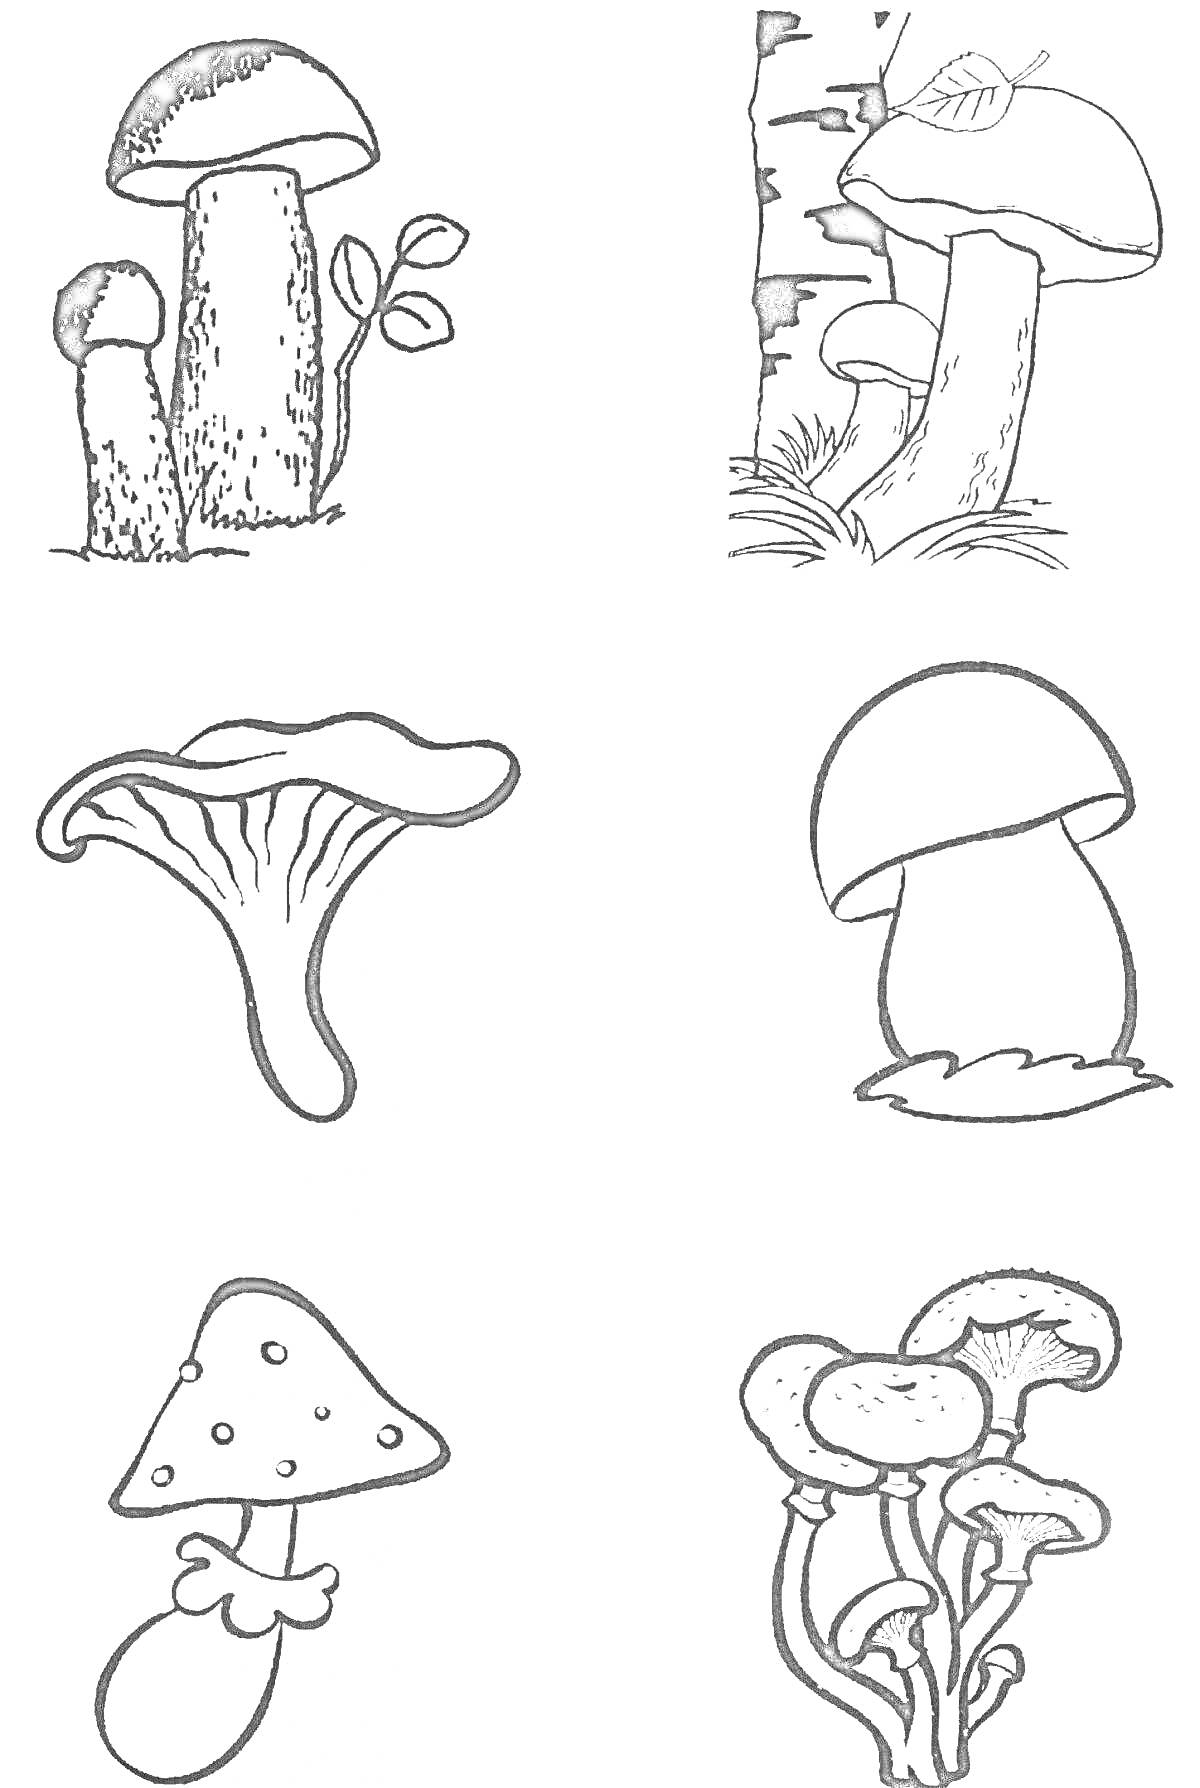 Раскраска Раскраска с изображениями съедобных и несъедобных грибов. На картинке пять видов грибов, включая подберезовик, мухомор, групповое скопление грибов и два одиночных гриба неизвестного вида.